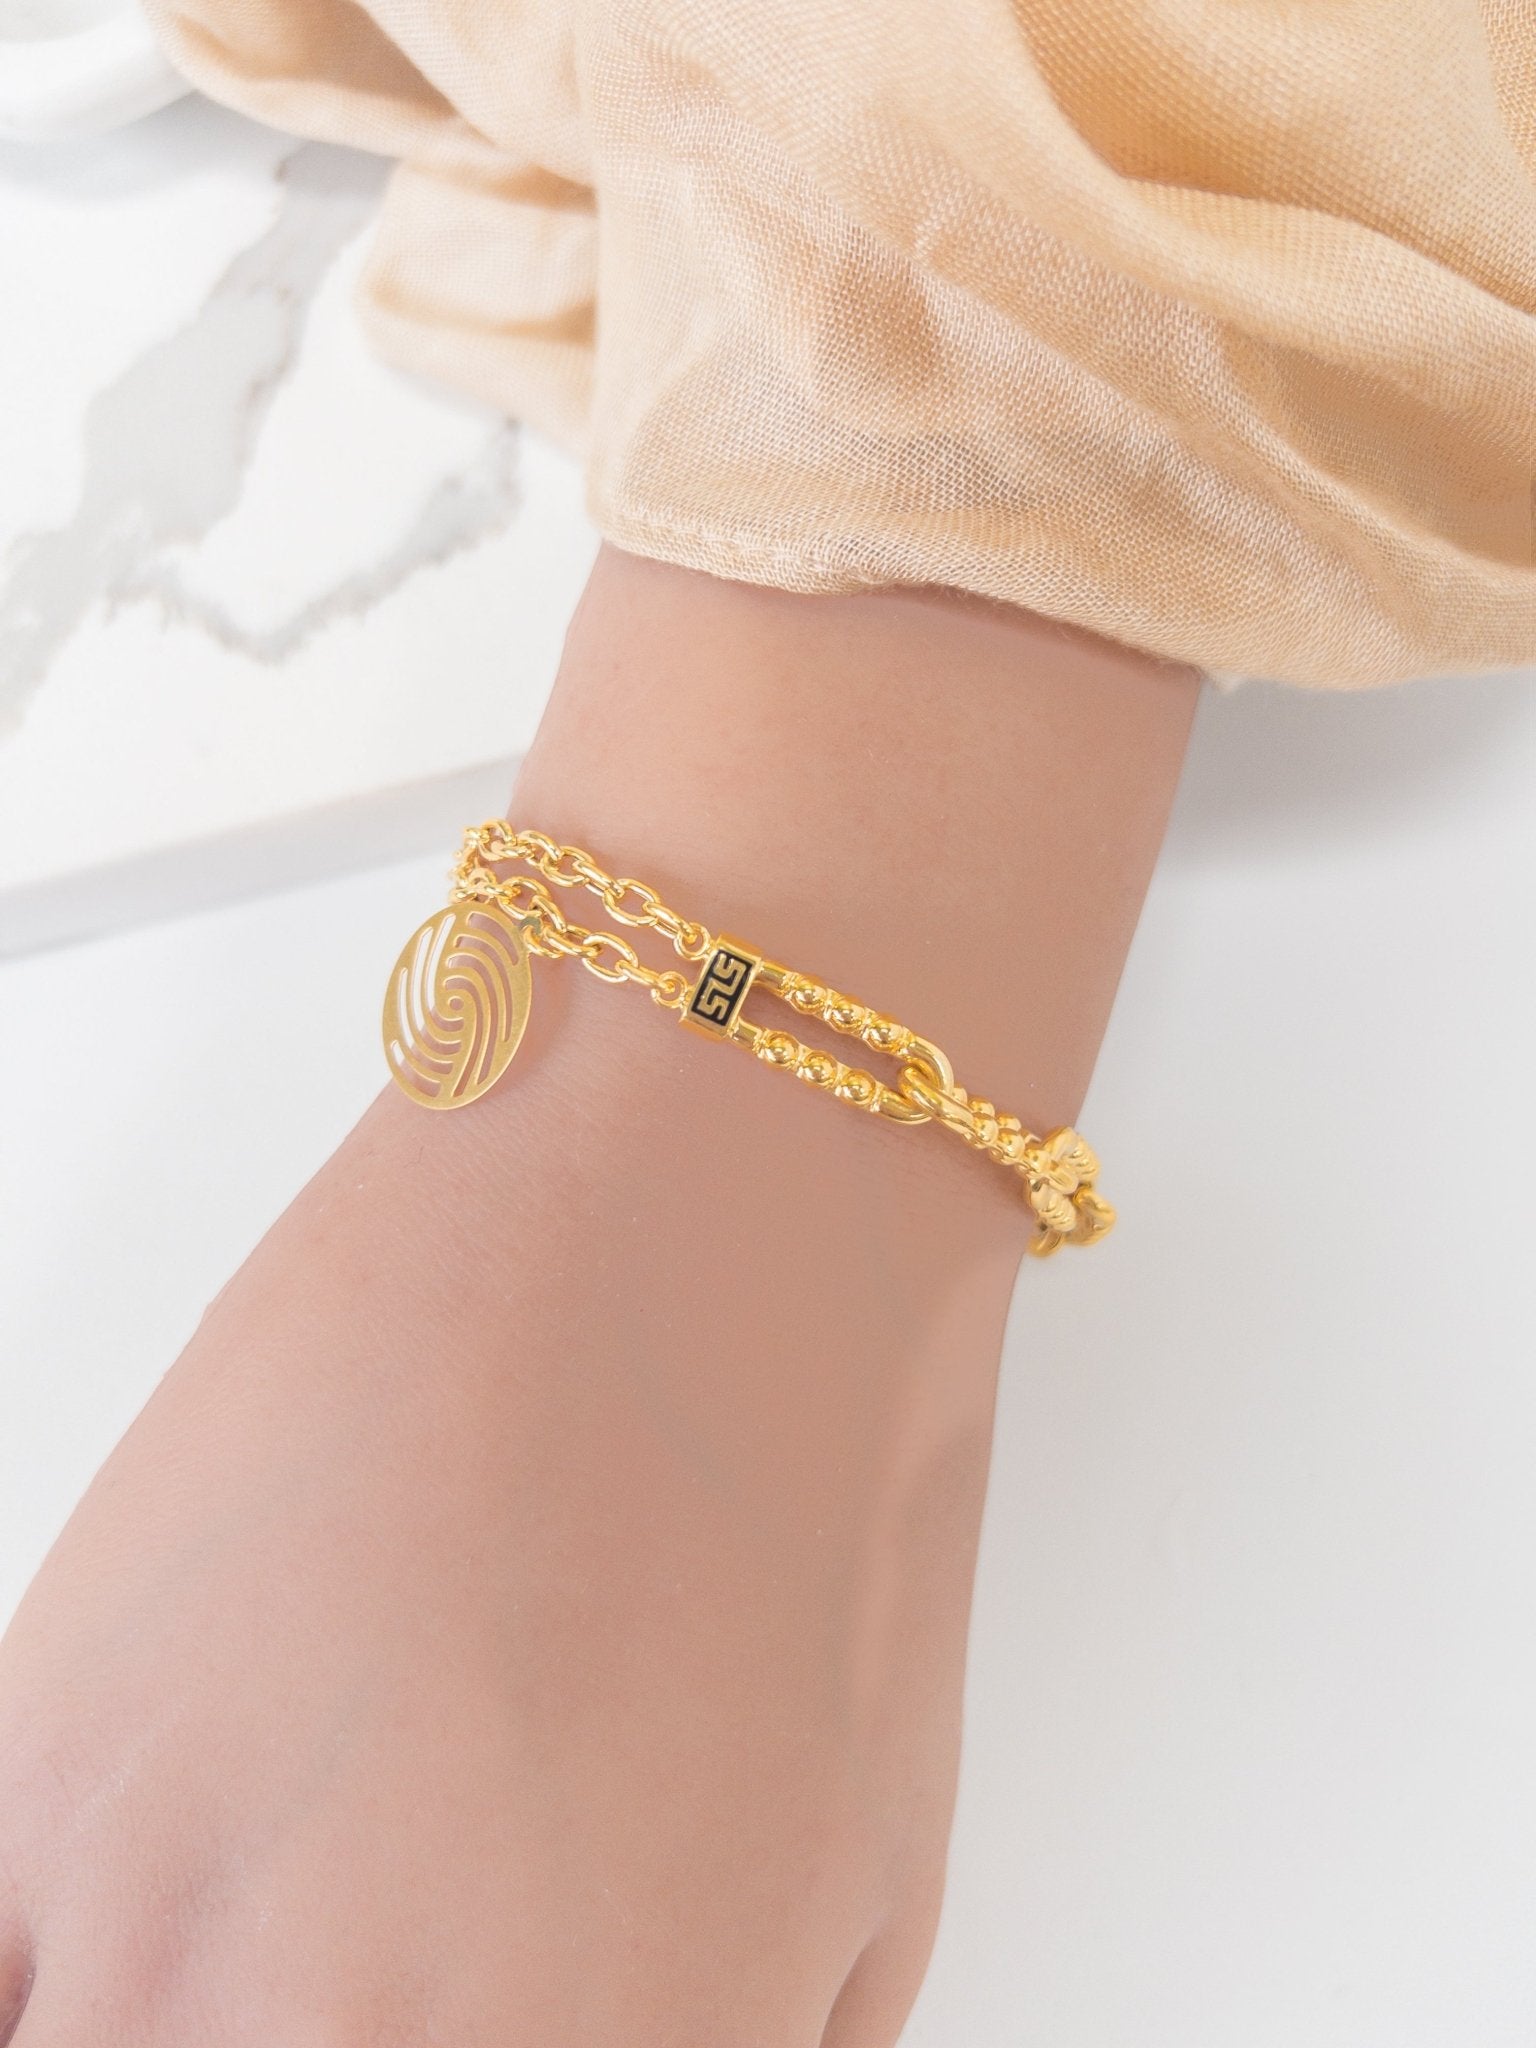 21k Gold Bracelets - Cleopatra Jewelers